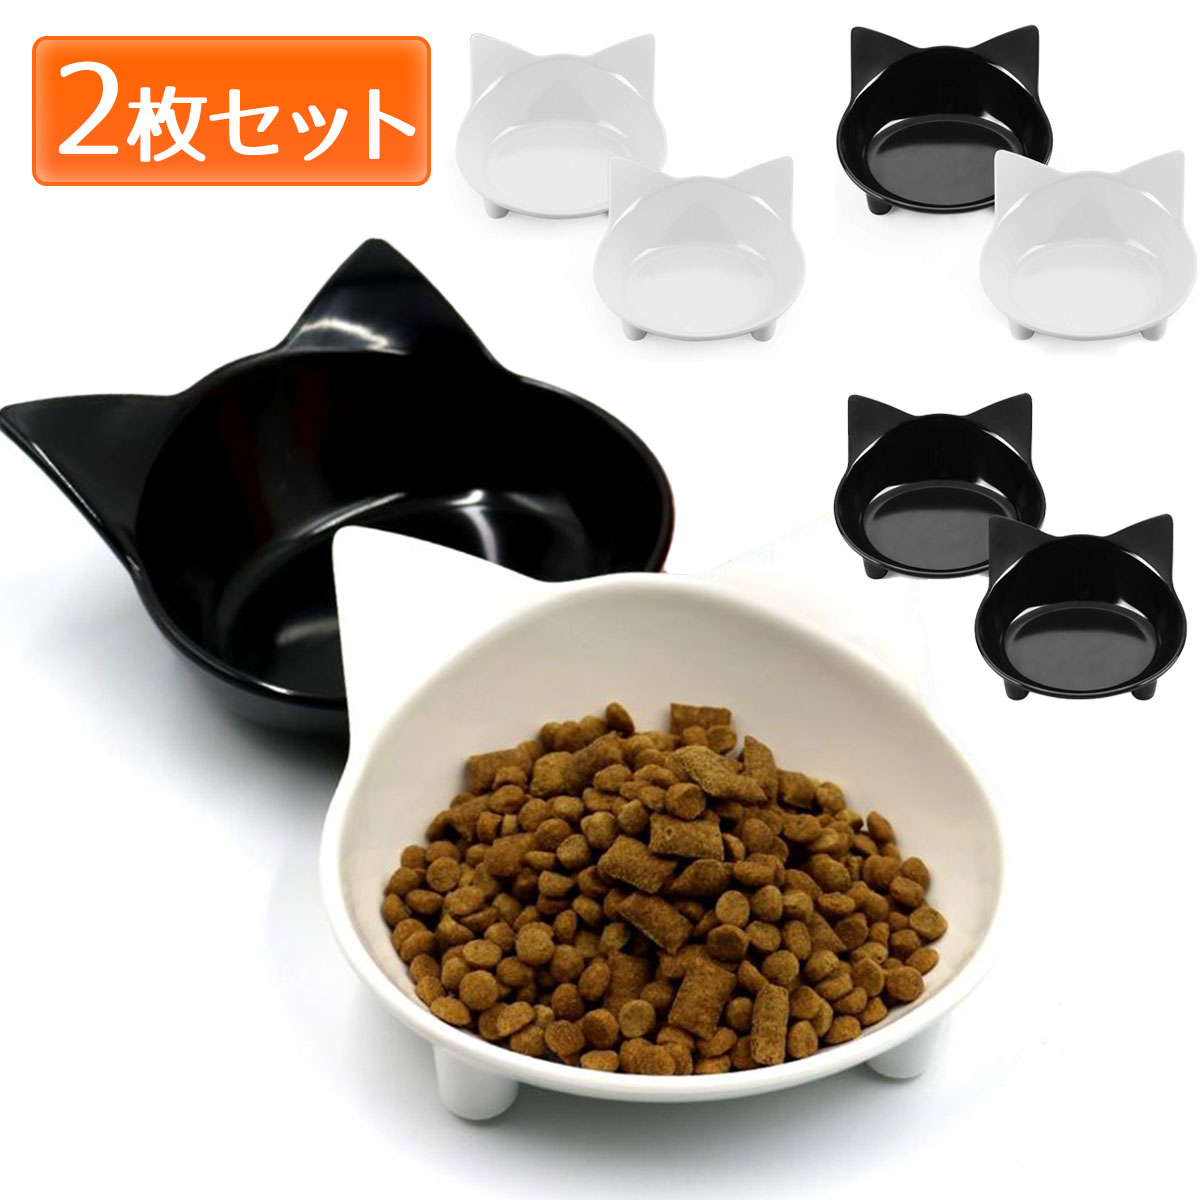 猫 食器 フードボウル セット 傾斜 公式ショップ 猫用 ねこ エサ入れ 浅 ご飯 ペット用食器 プラスチック 餌皿 卓出 子猫 皿 2点セット メラミン